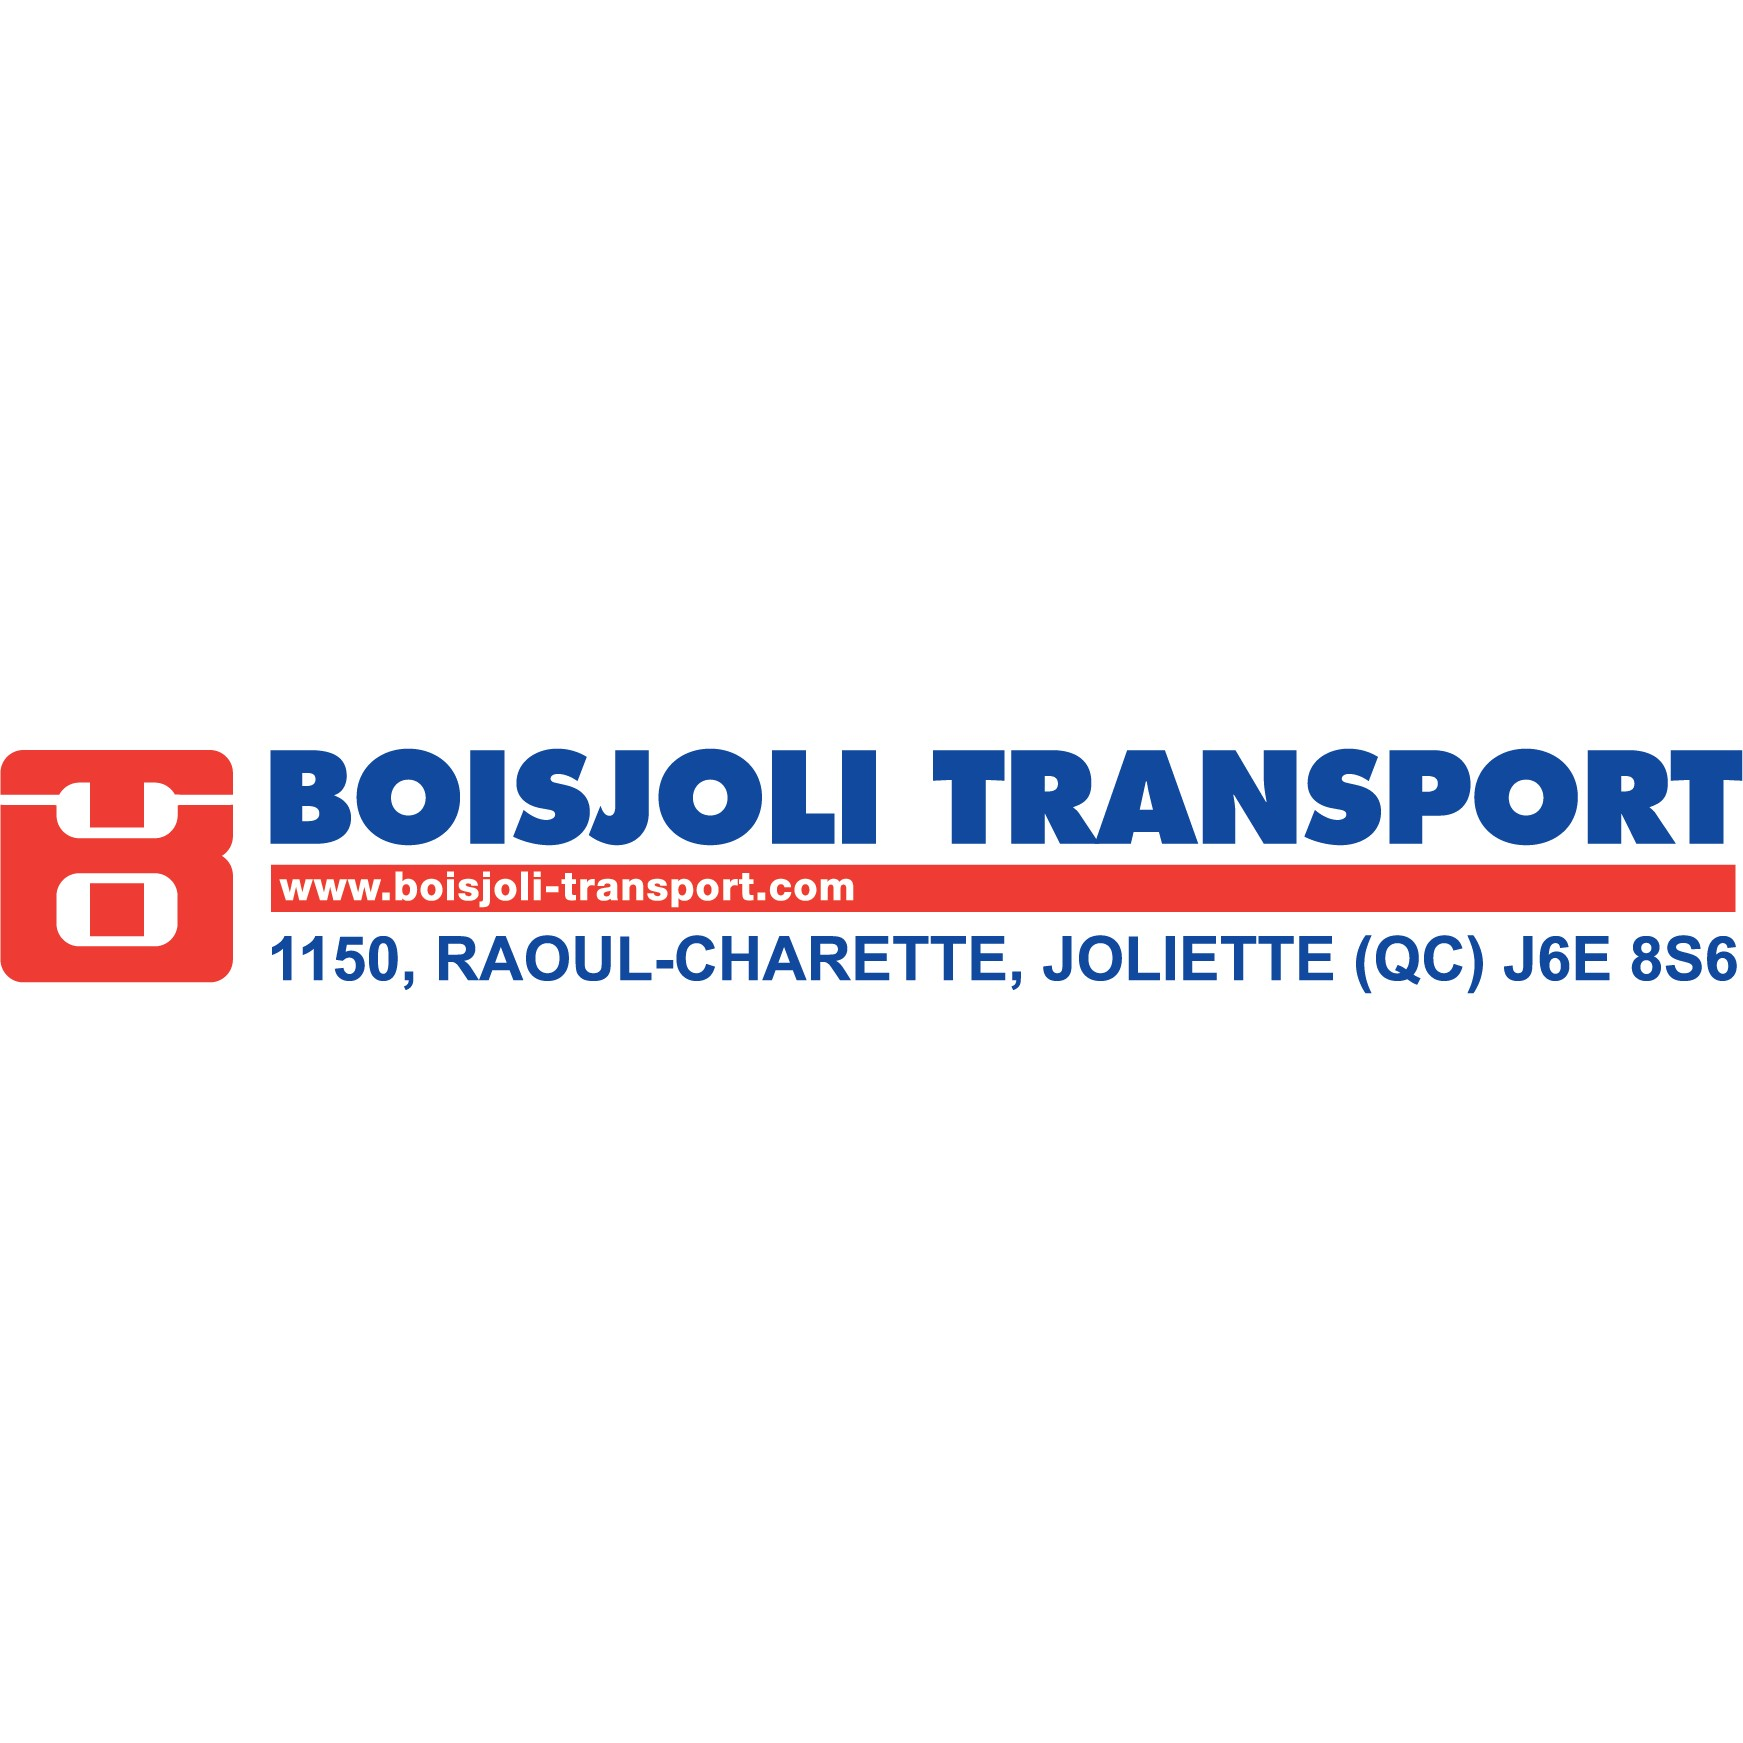 Boisjoli Transport